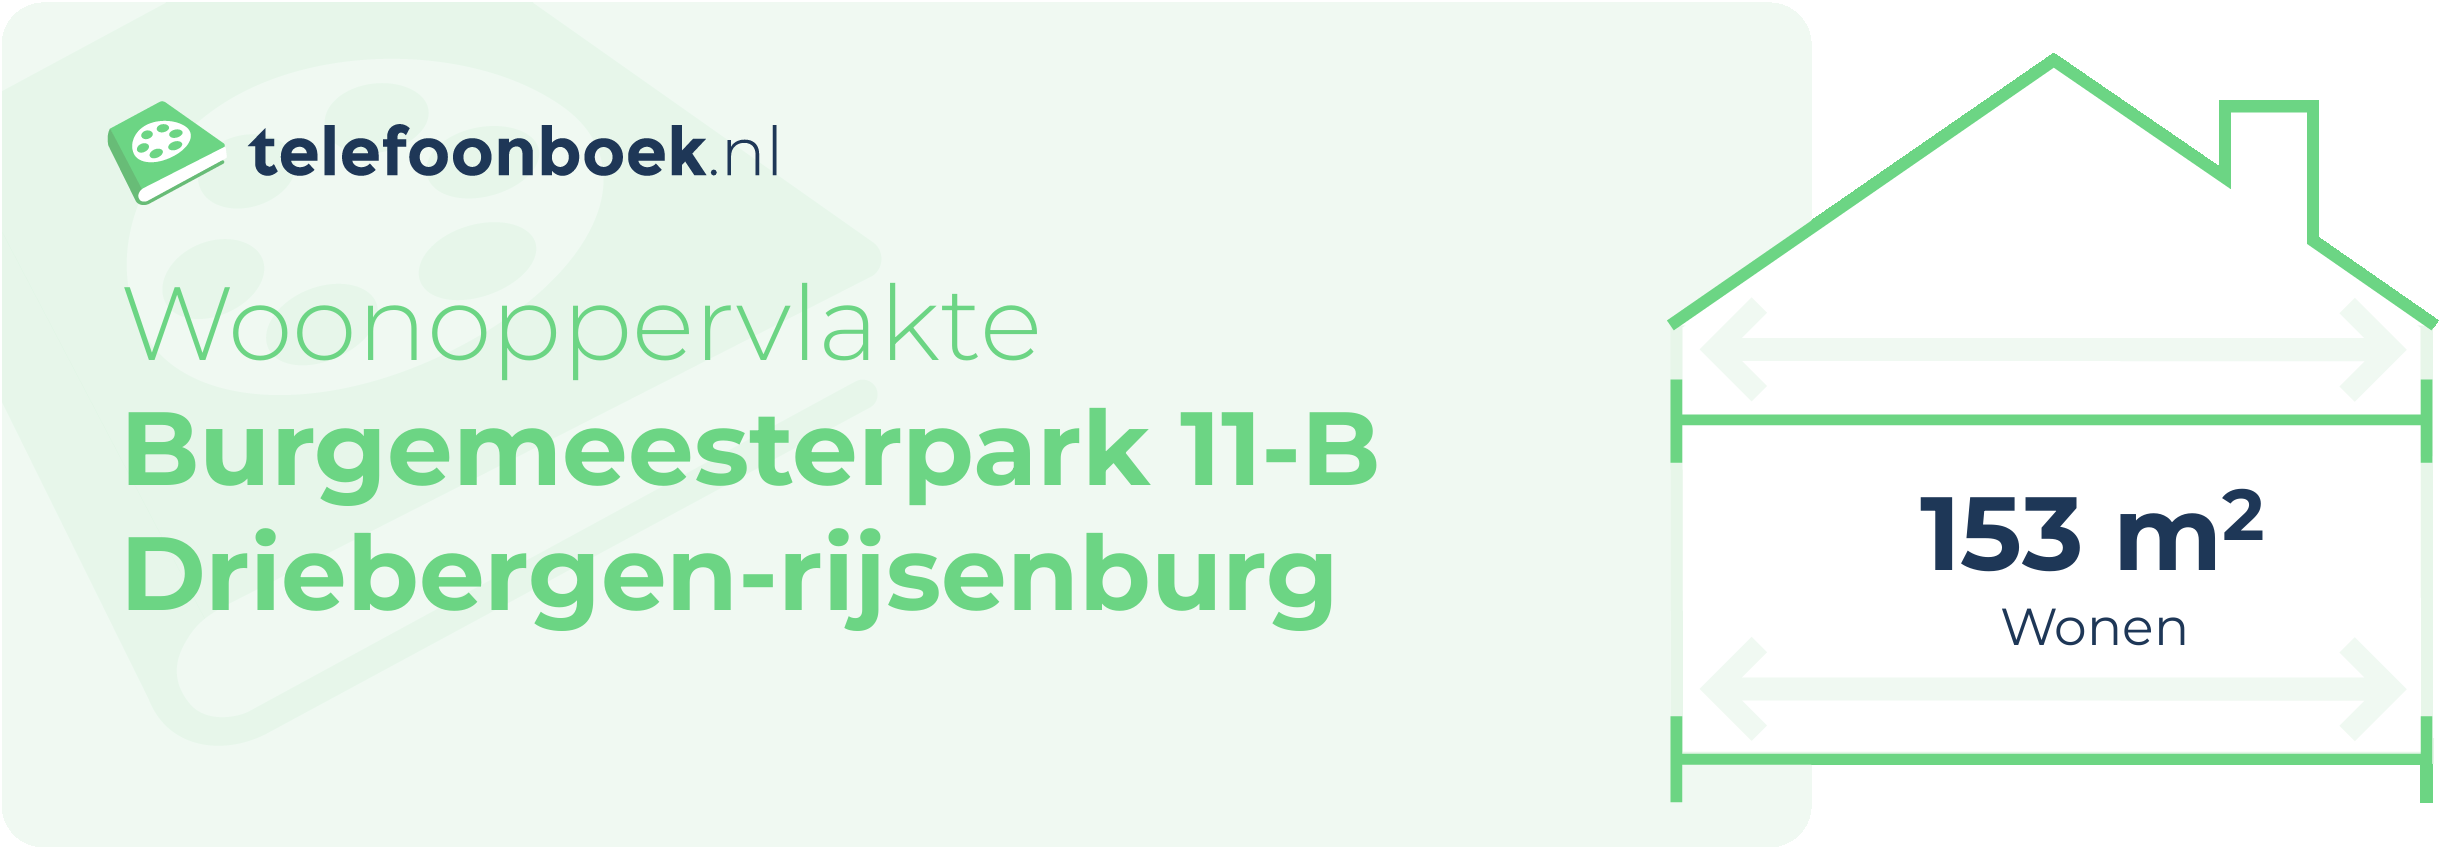 Woonoppervlakte Burgemeesterpark 11-B Driebergen-Rijsenburg